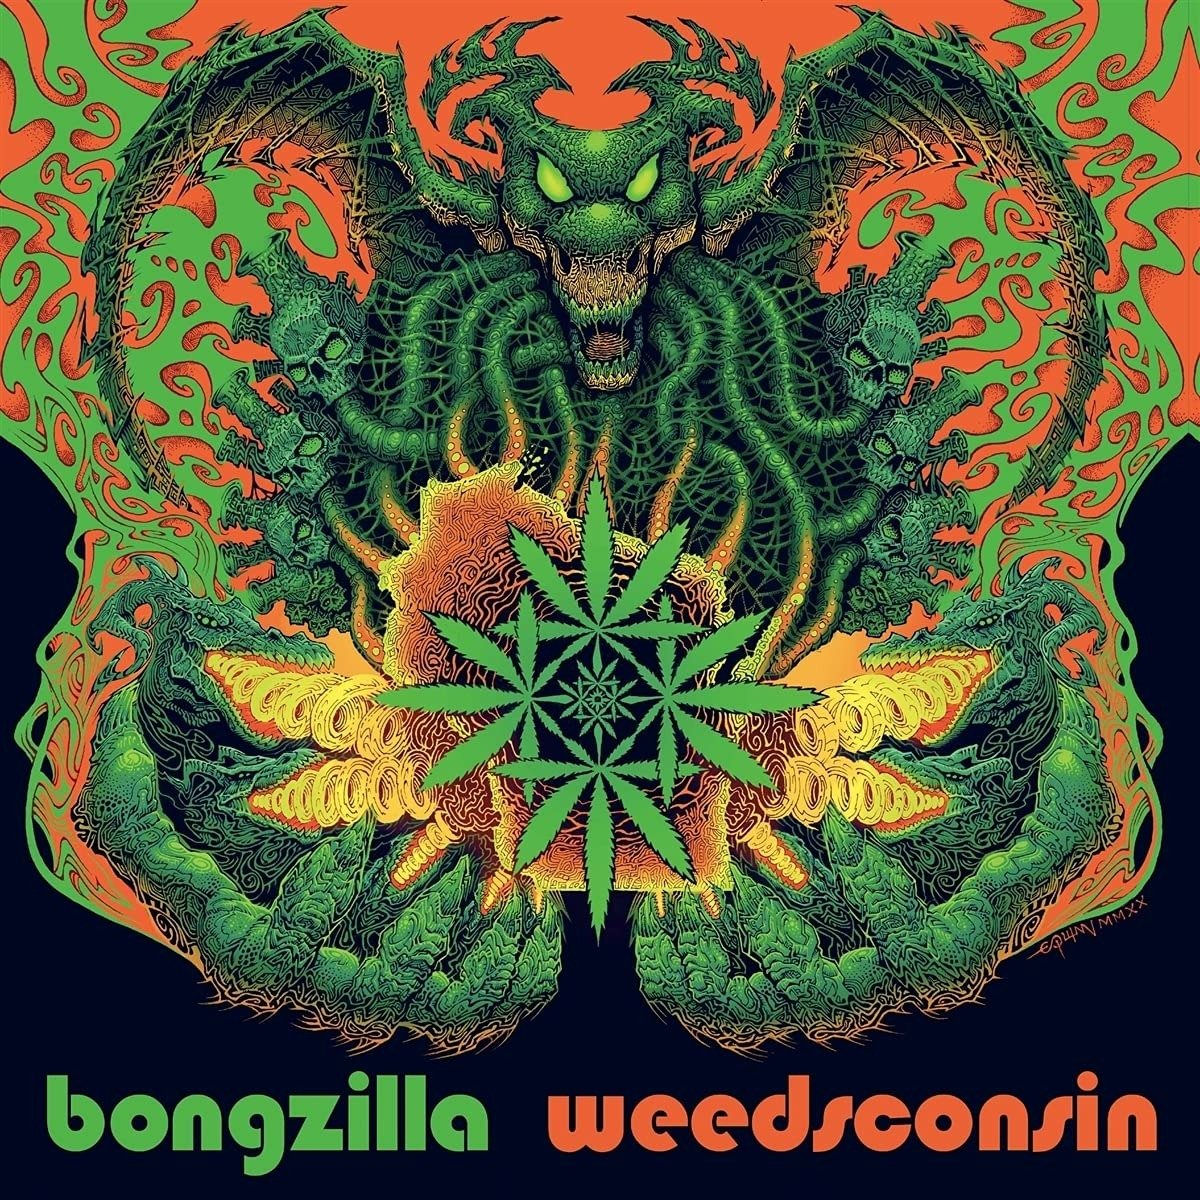 CD Shop - BONGZILLA WEEDSCONSIN DELUXE